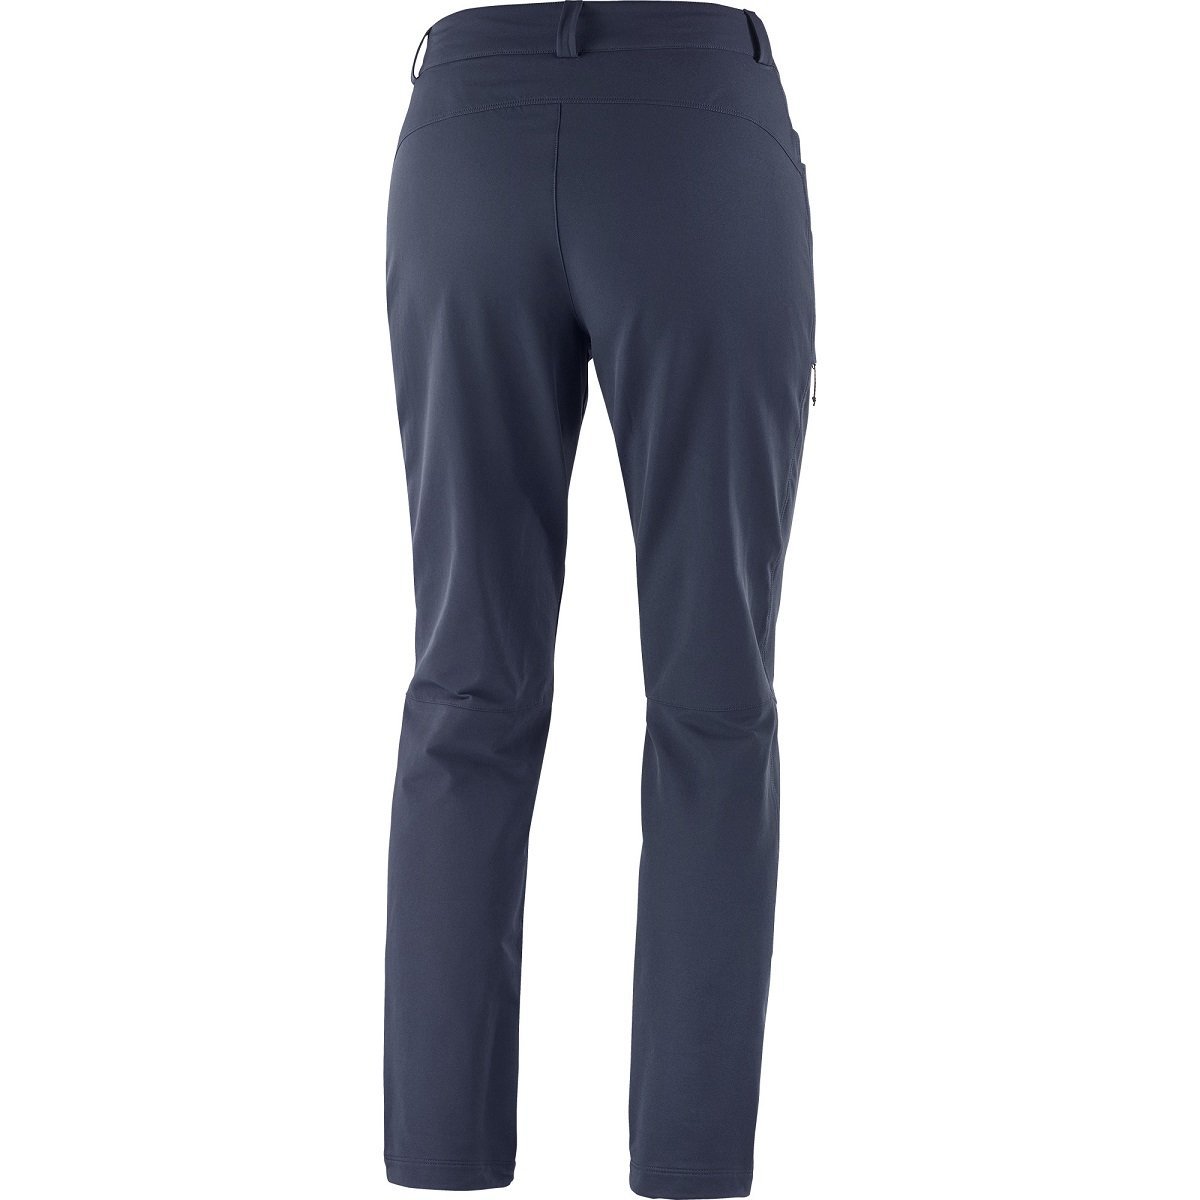 Nohavice Salomon Wayfarer Warm Pants W - modrá (štandardná dĺžka)